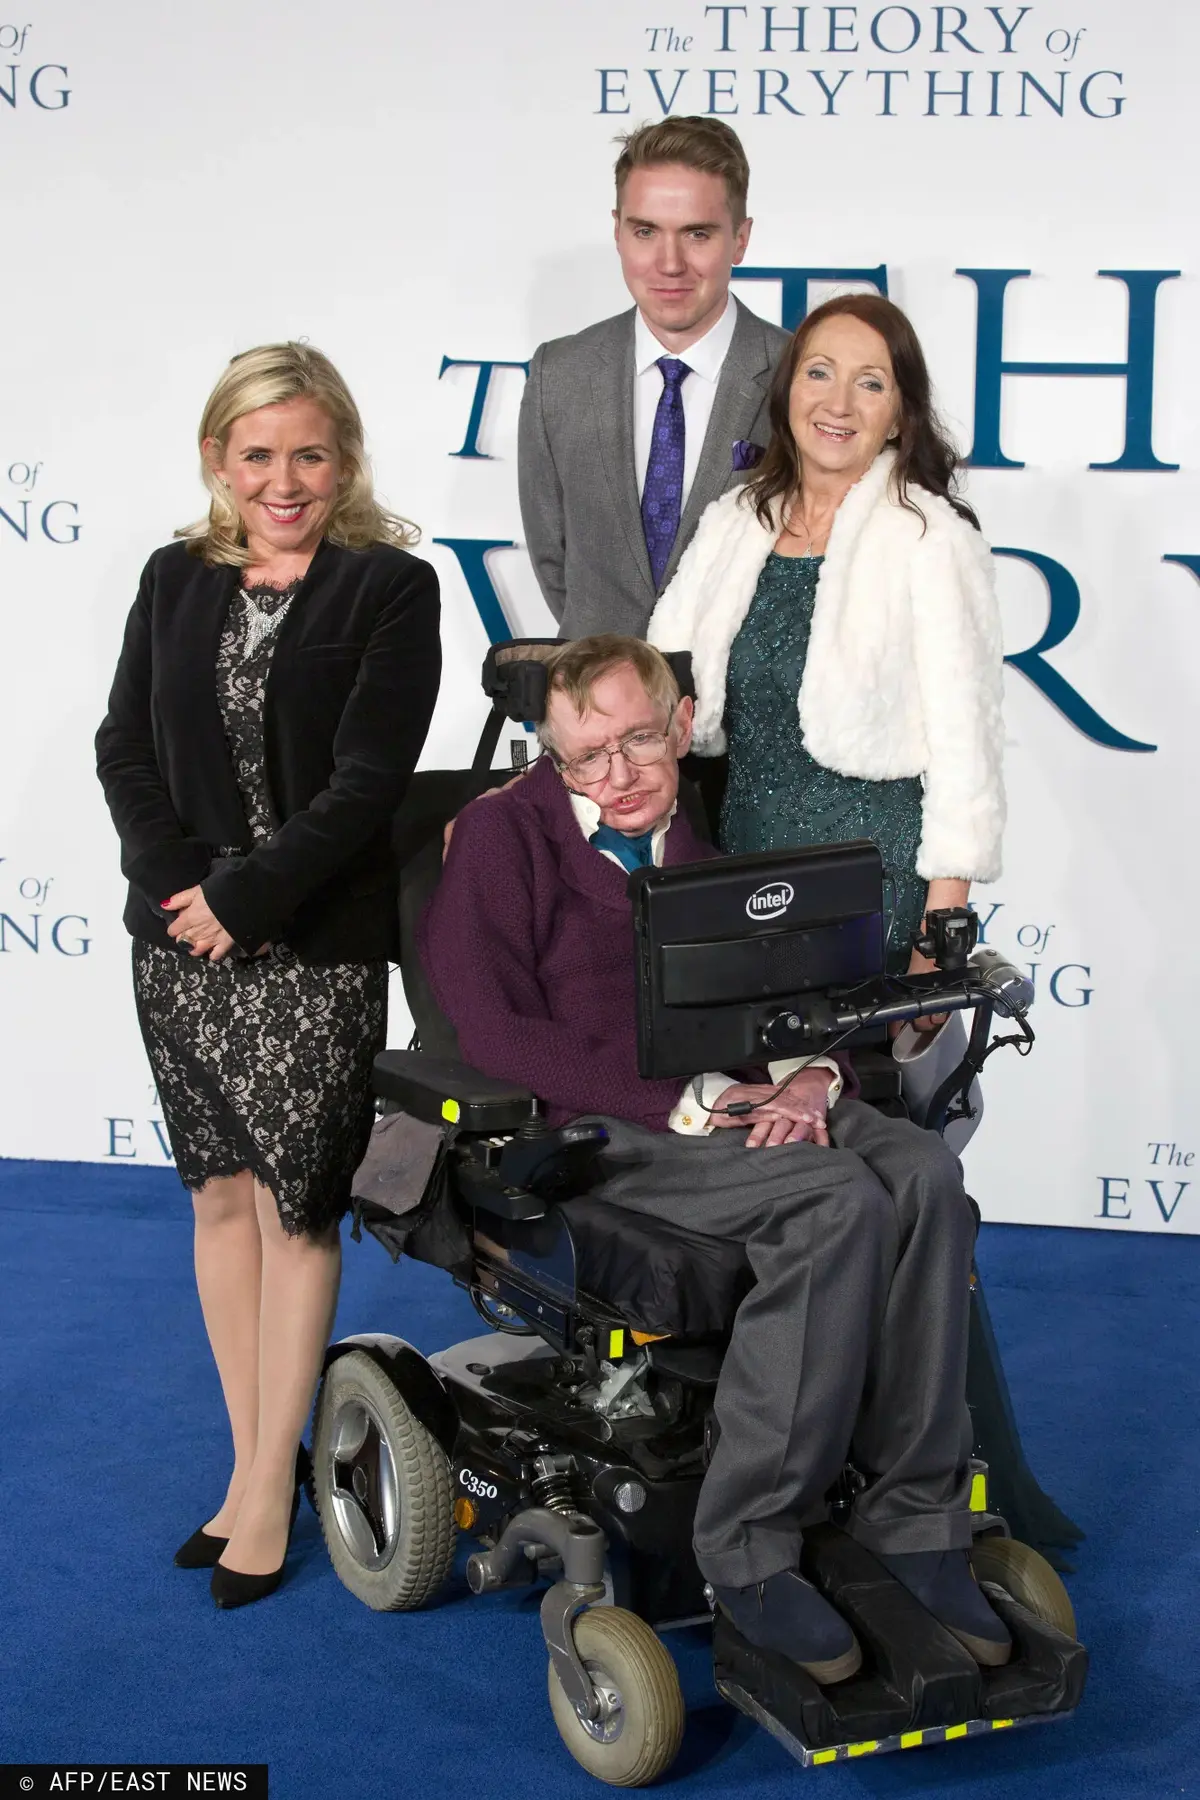 Stephen Hawking z bliskimi na angielskiej premierze filmu "Teoria wszystkiego"